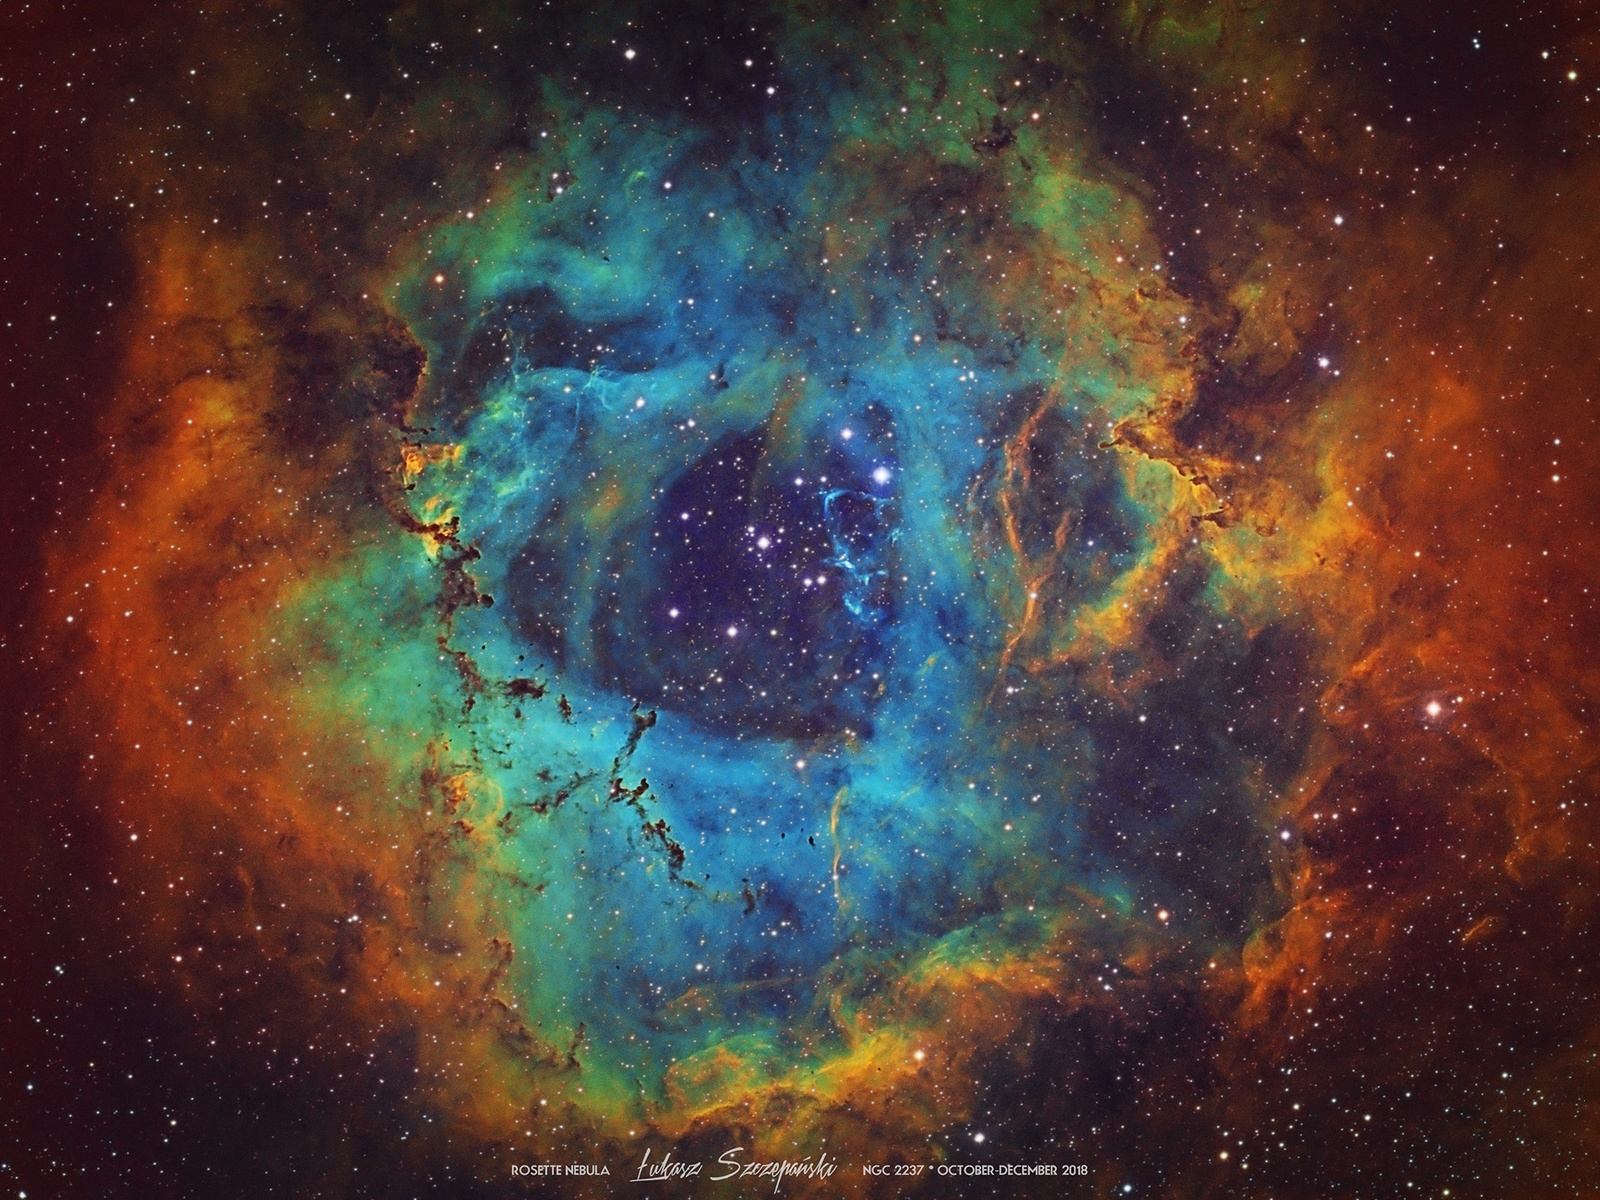 !Final_NGC2246-HST_v3_lesscolor_lesshalo_signed_1920px.jpg